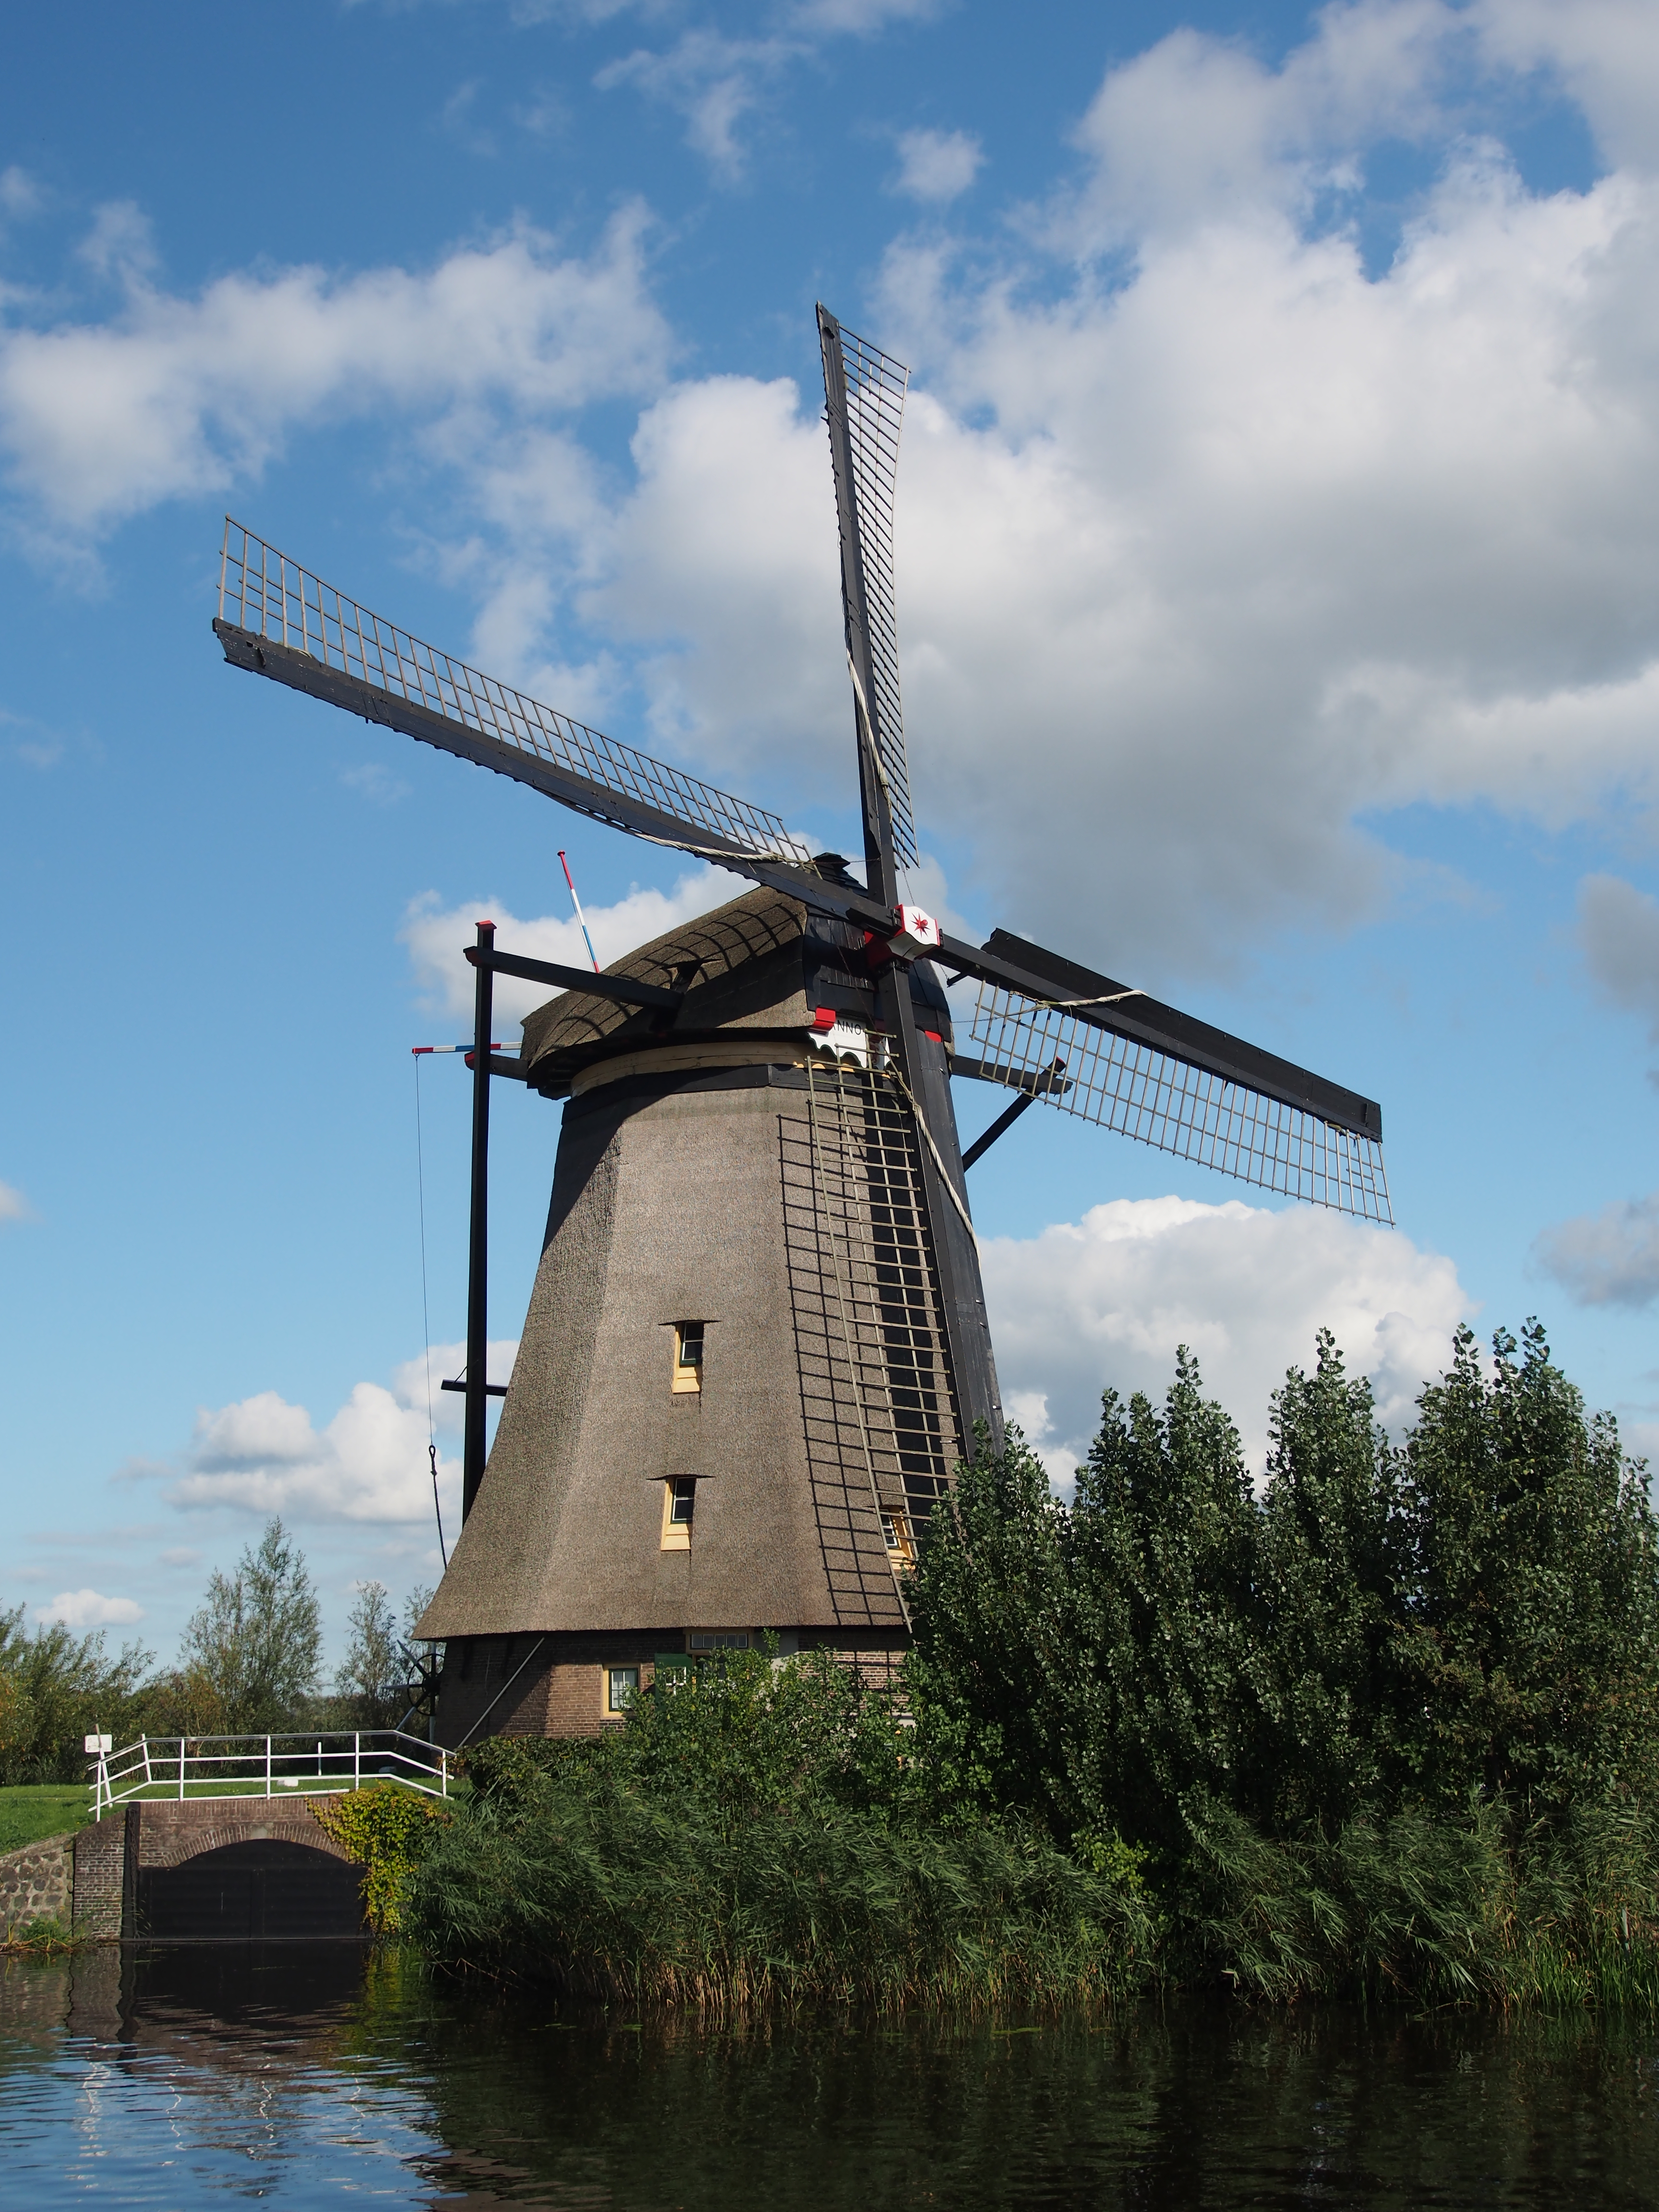 File:Dutch windmill at Kinderdijk pic49.JPG - Wikimedia Commons